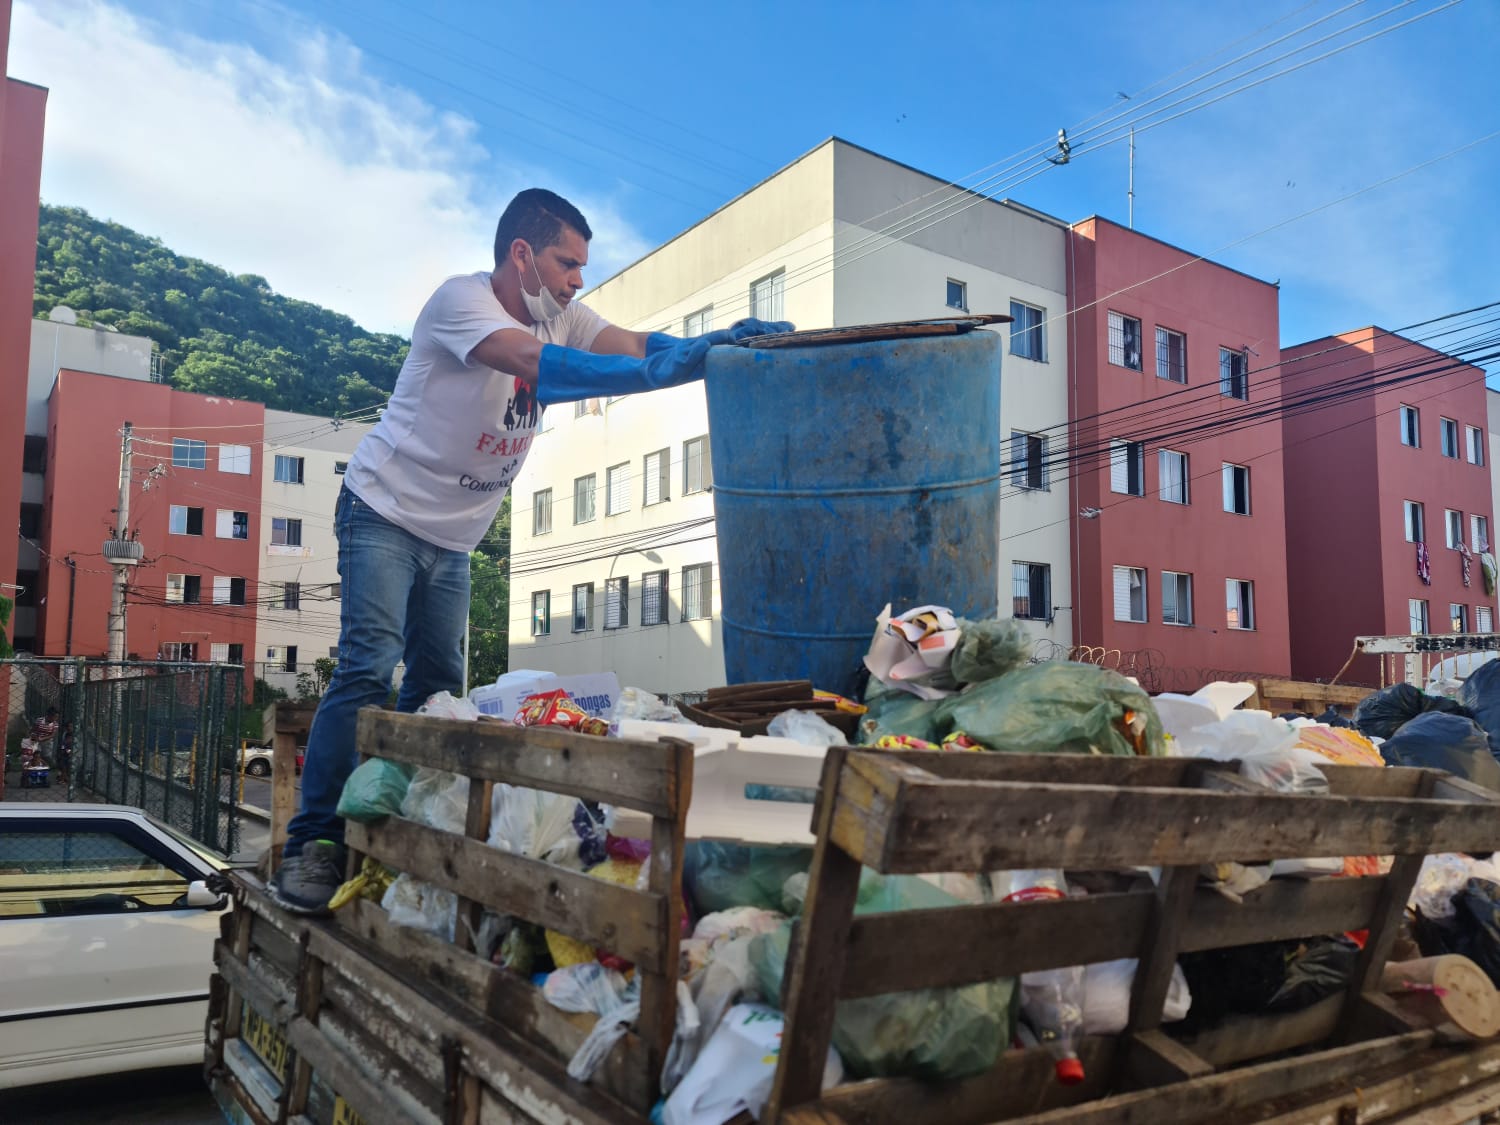 “Profissionais da limpeza pública, esses tem o meu respeito!”, afirma vereador após recolher lixo nas ruas de Vitória